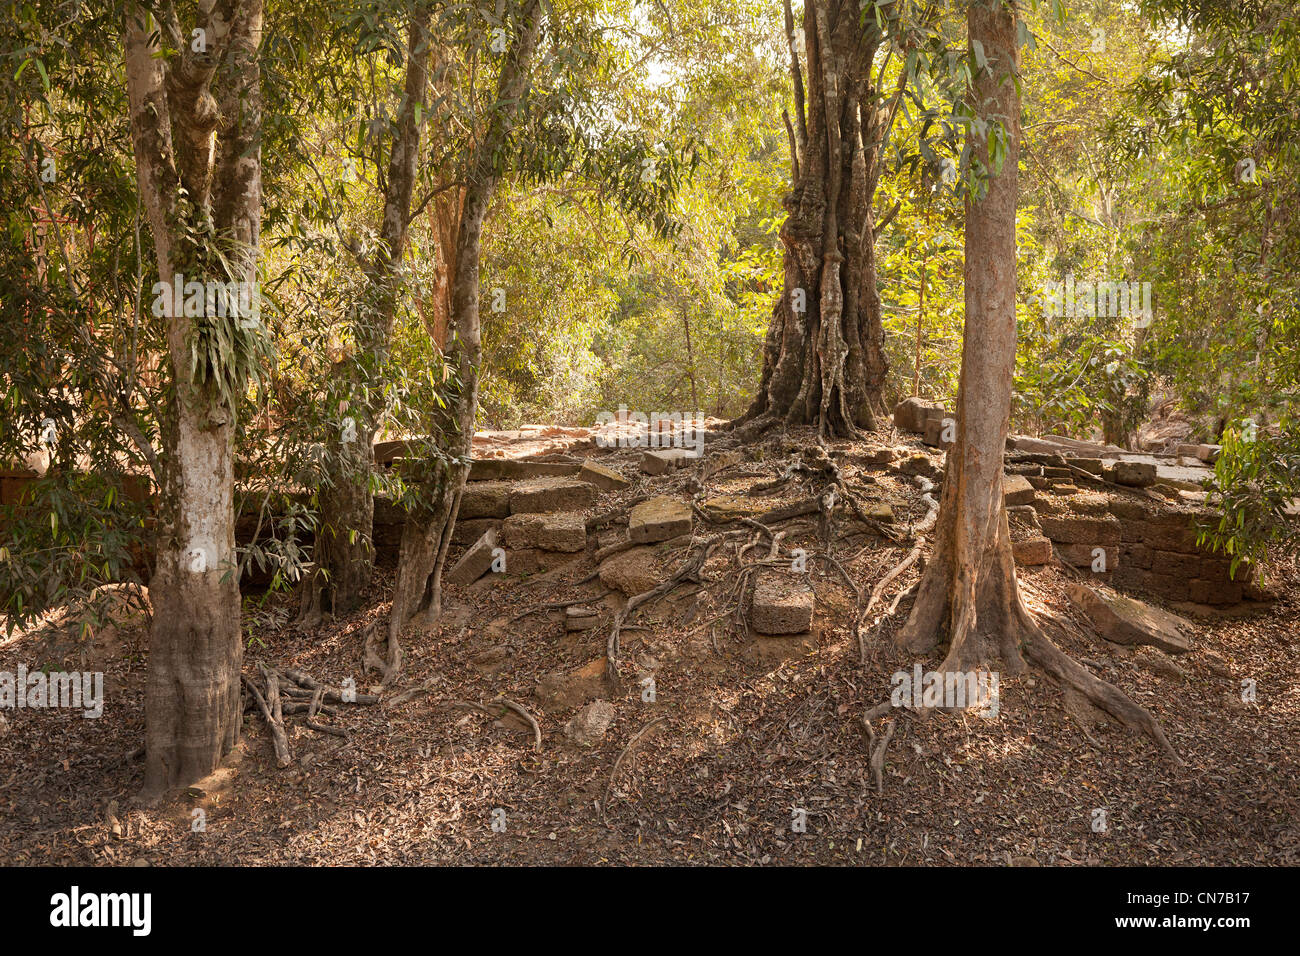 Camboya Angkor Wat, márgenes de bosque seco y polvoriento con tierra suelta y piedras de construcción Foto de stock